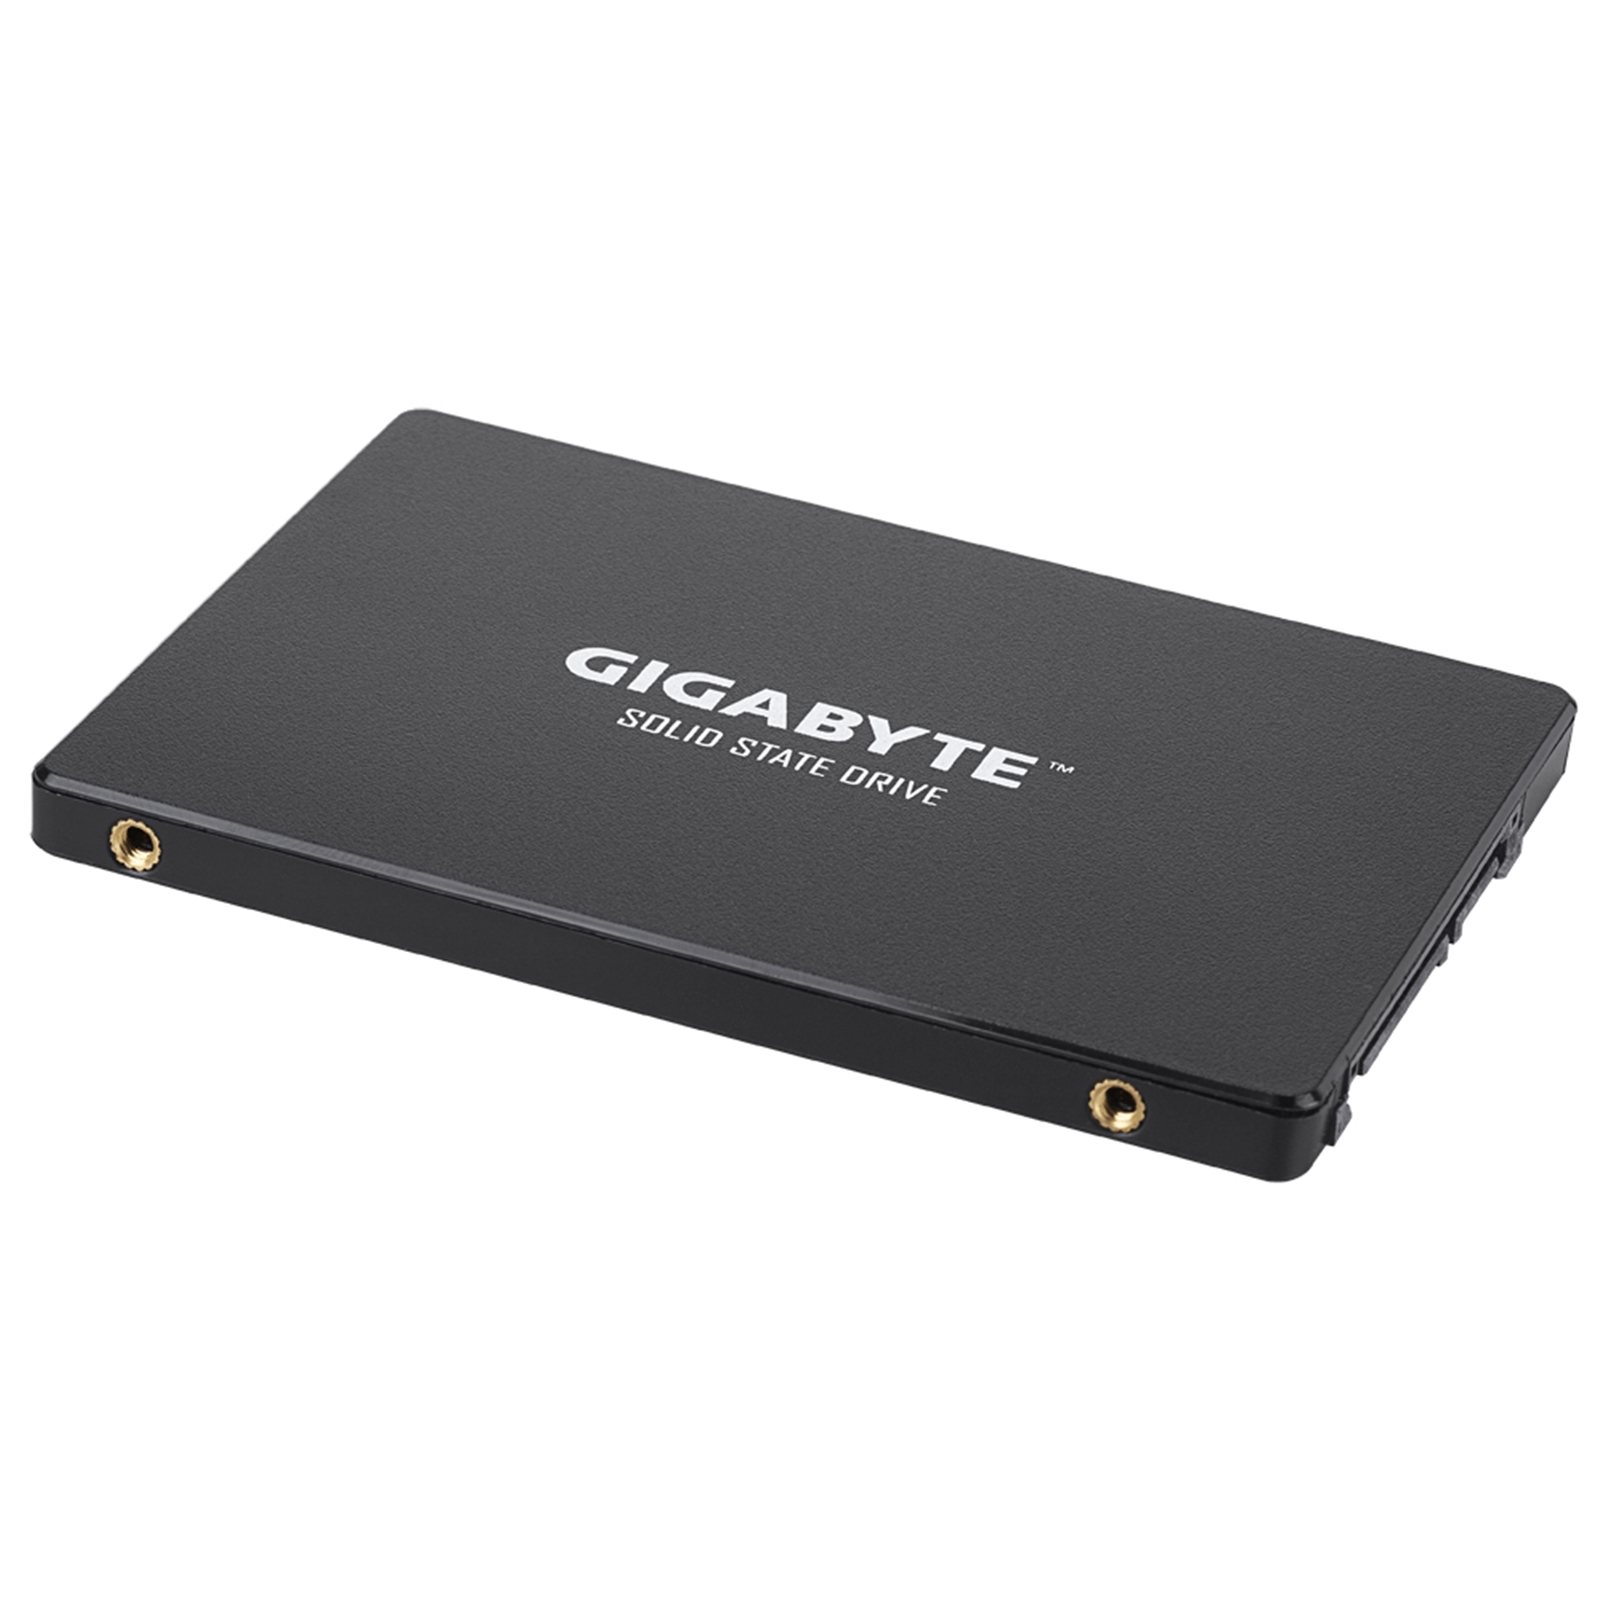 Gigabyte 240GB SATA lll SSD